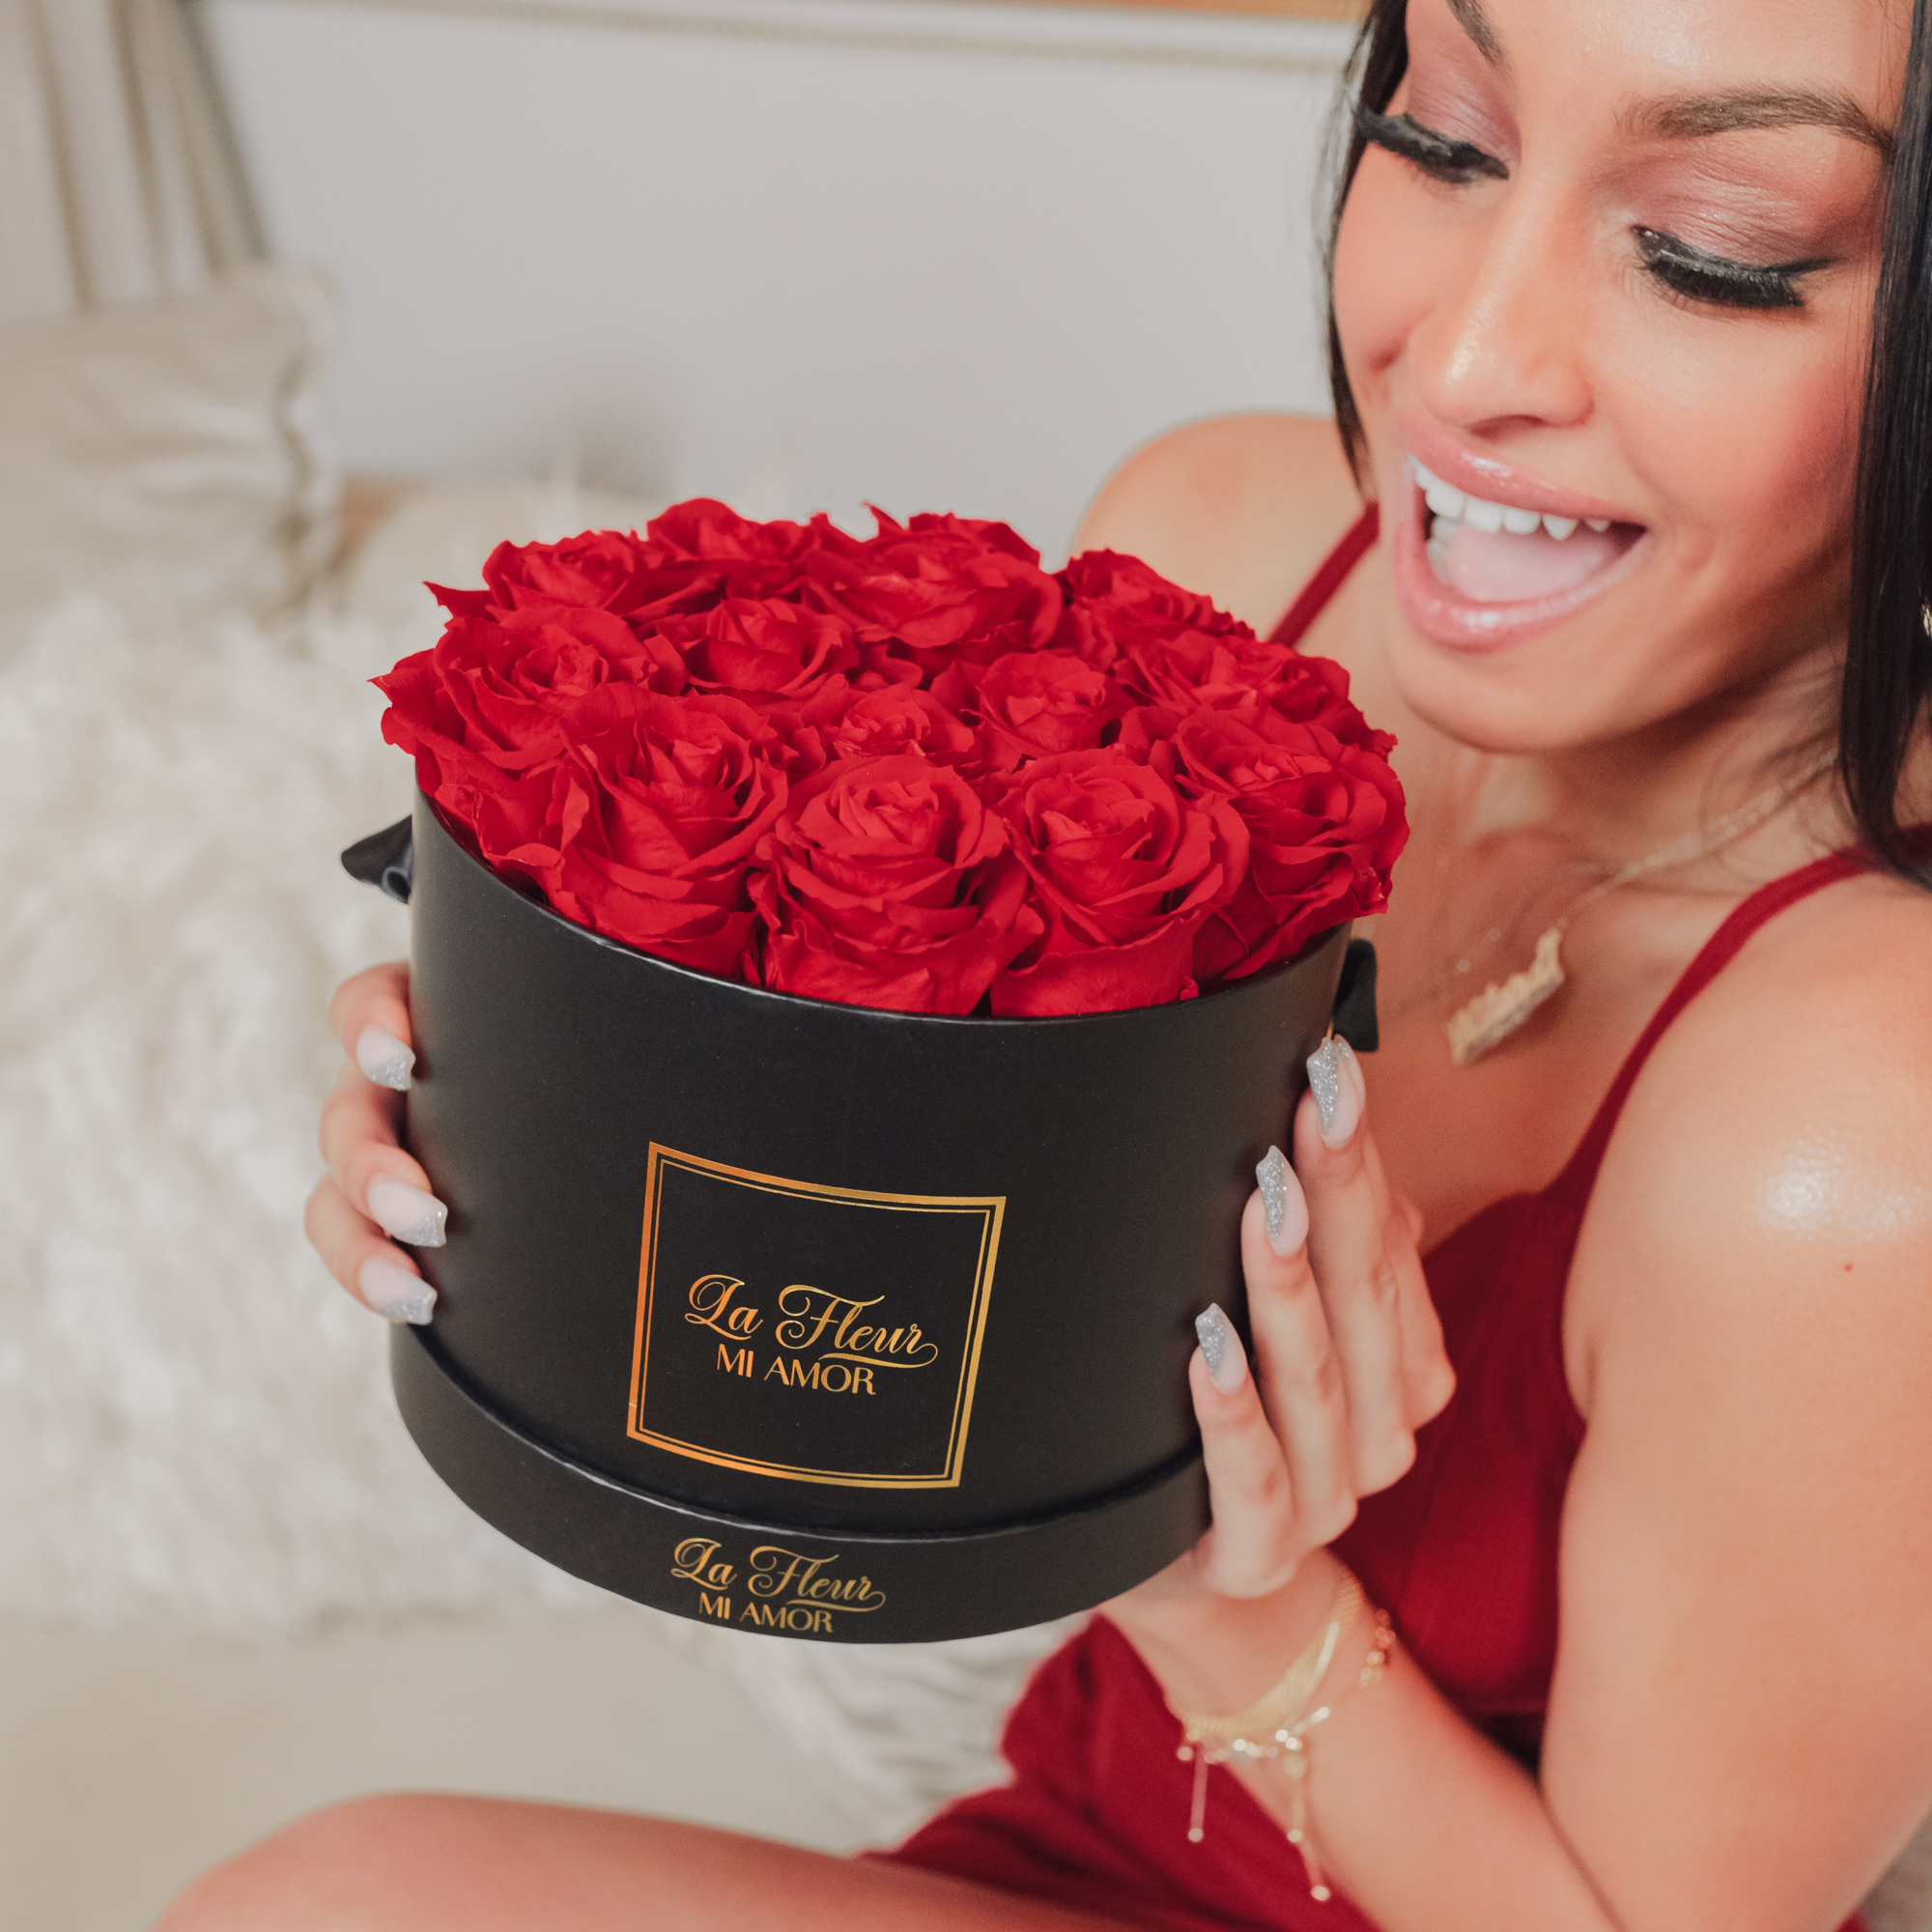 Belle Amour 14 Rose Box Bouquet - La Fleur Mi Amor